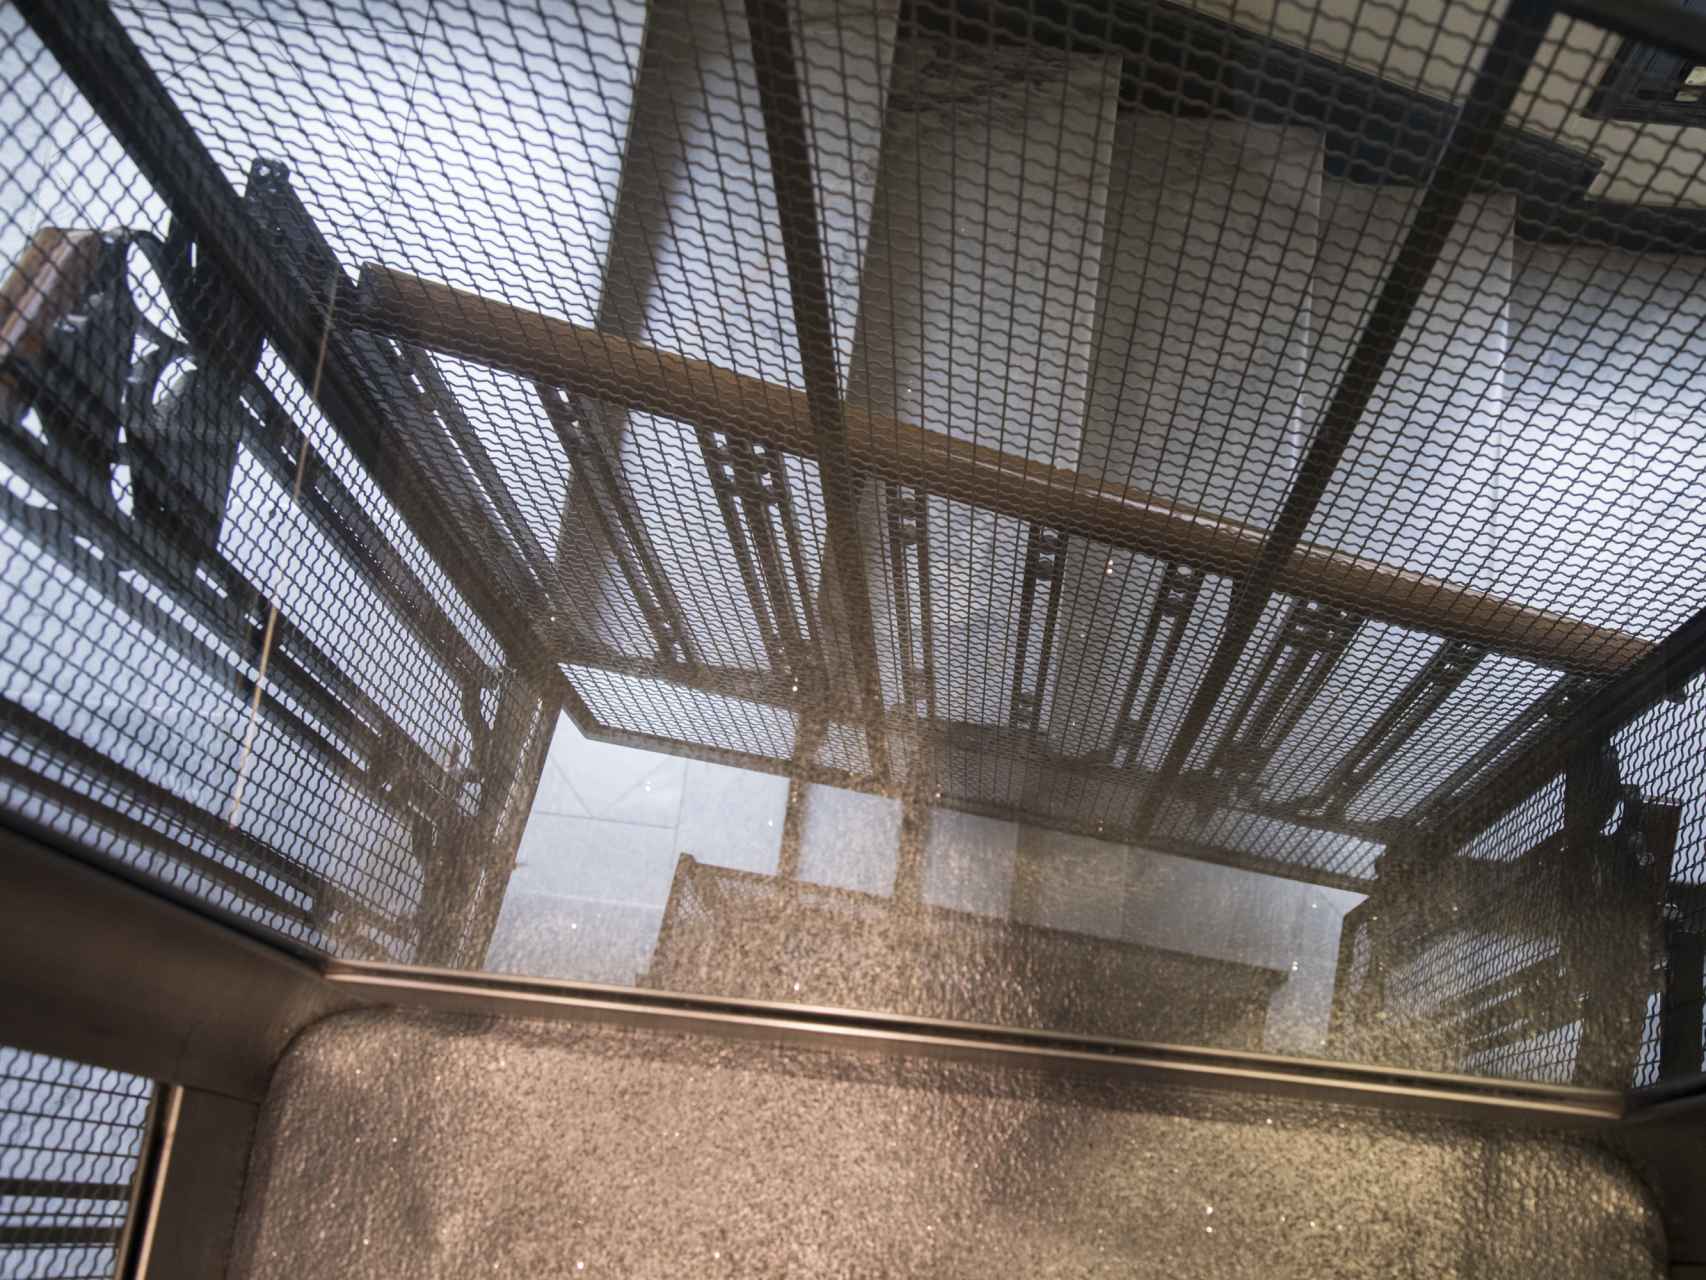 En un ascensor similar al que protagonizó el suceso se puede observar el hueco comprendido entre la cabina del ascensor y la estructura de metal, suficiente para que caigan dos personas.